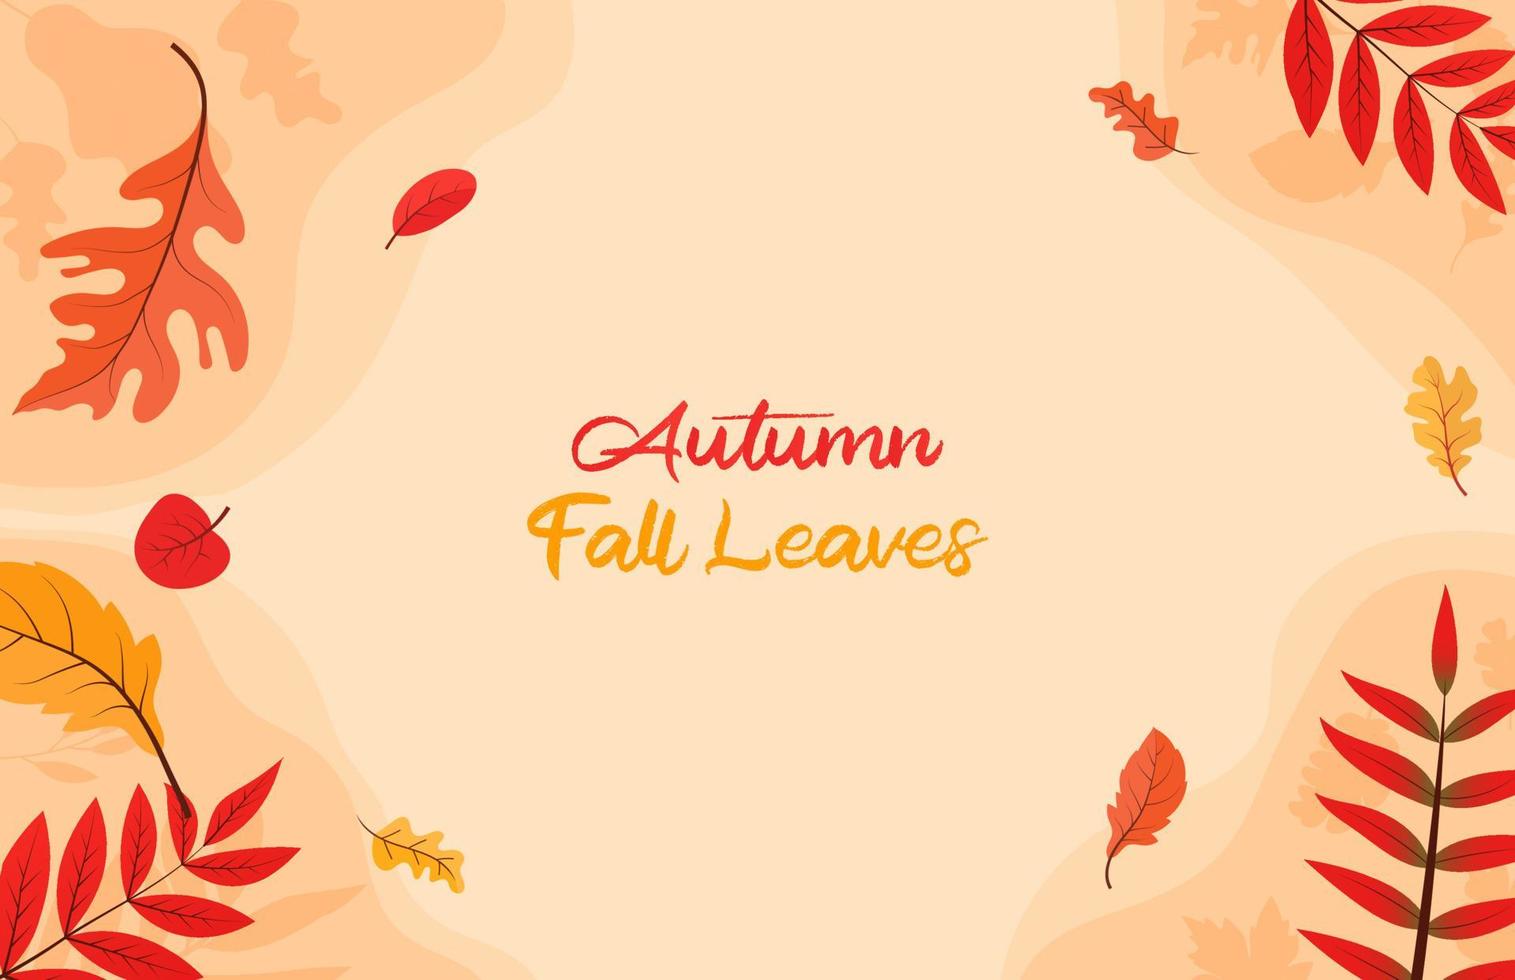 kleurrijk herfst vallen bladeren bloemen achtergrond illustratie met esdoorn- blad vector